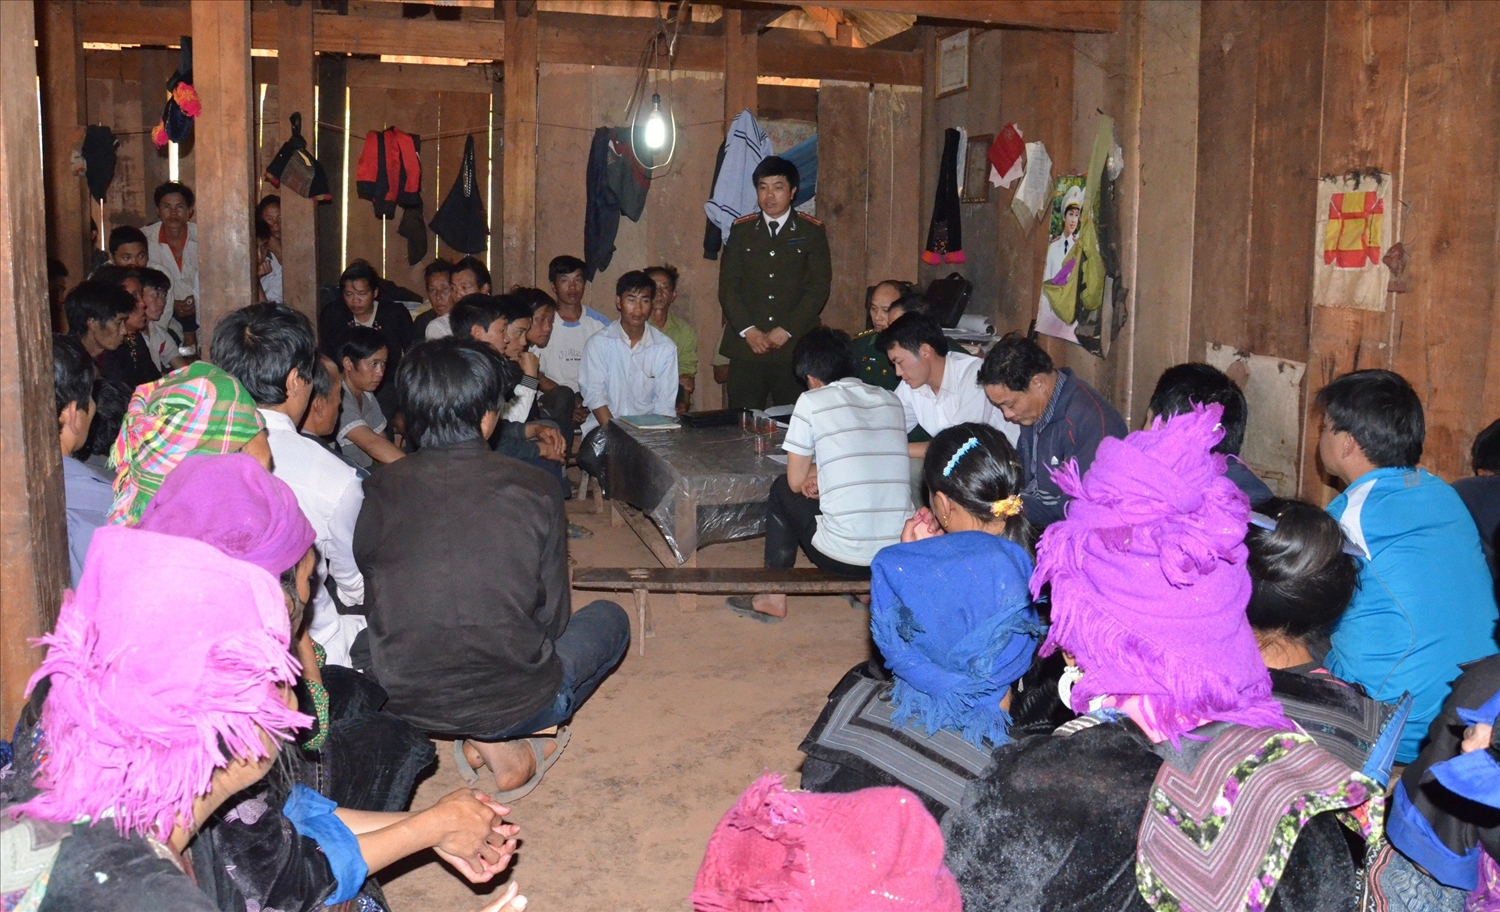 Lực lượng phối hợp Công an và Biên phòng tổ chức tuyên truyền người dân không tin và nghe theo tà đạo, tại khu dân cư vùng dân tộc thiểu số tỉnh Điện Biên.